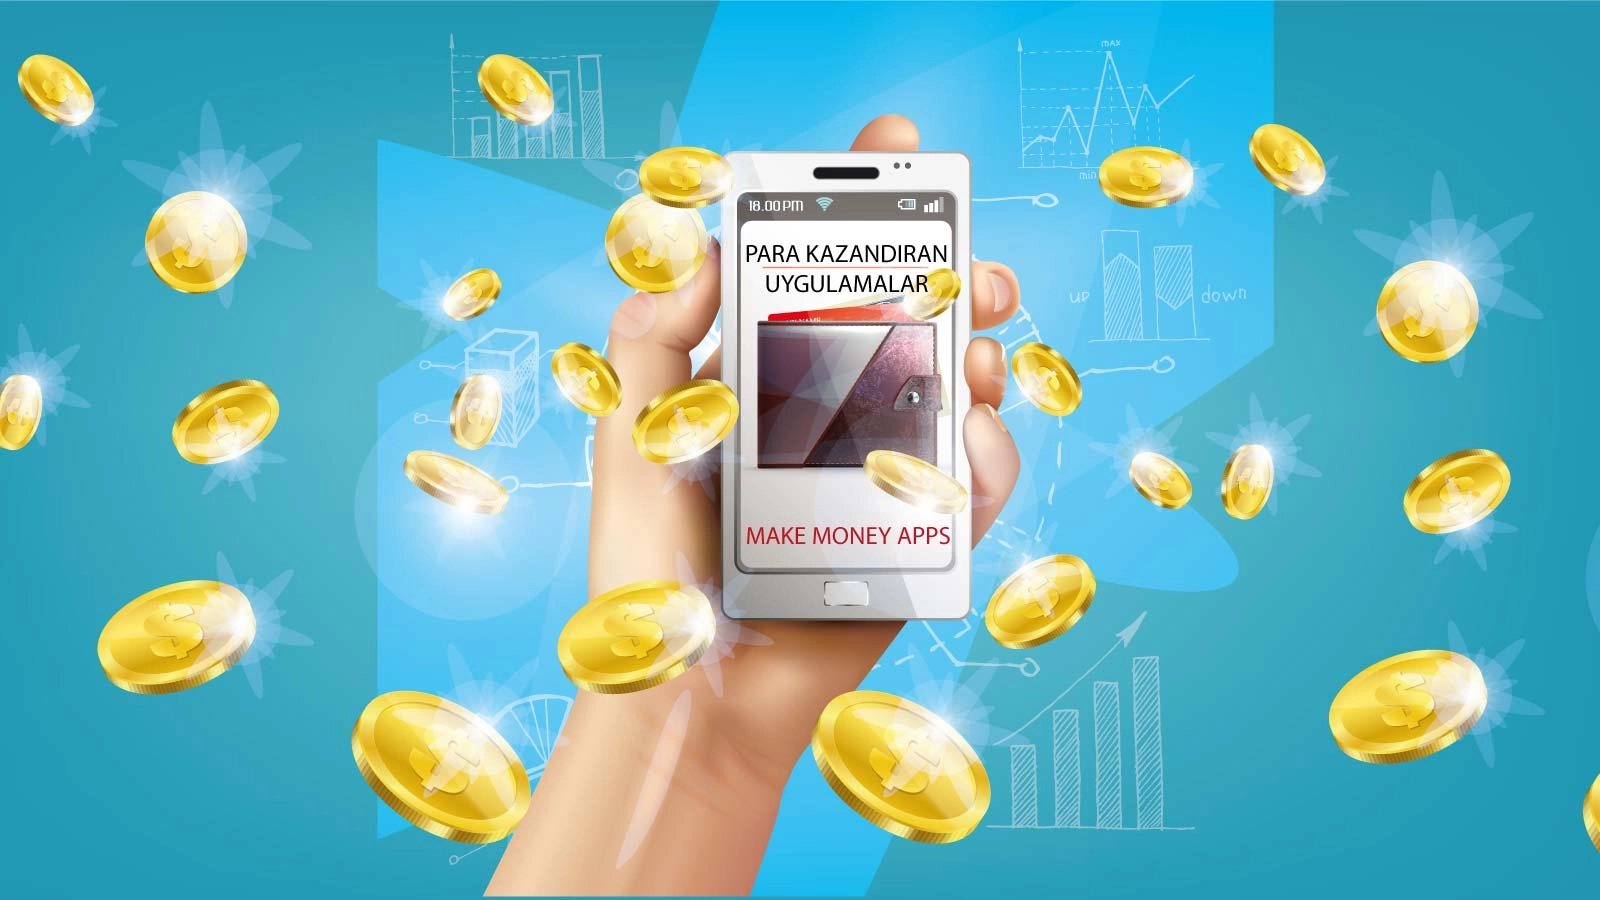 para kazandiran uygulamalar make money apps Para kazandıran uygulamalar ile telefon üzerinden para kazanmak